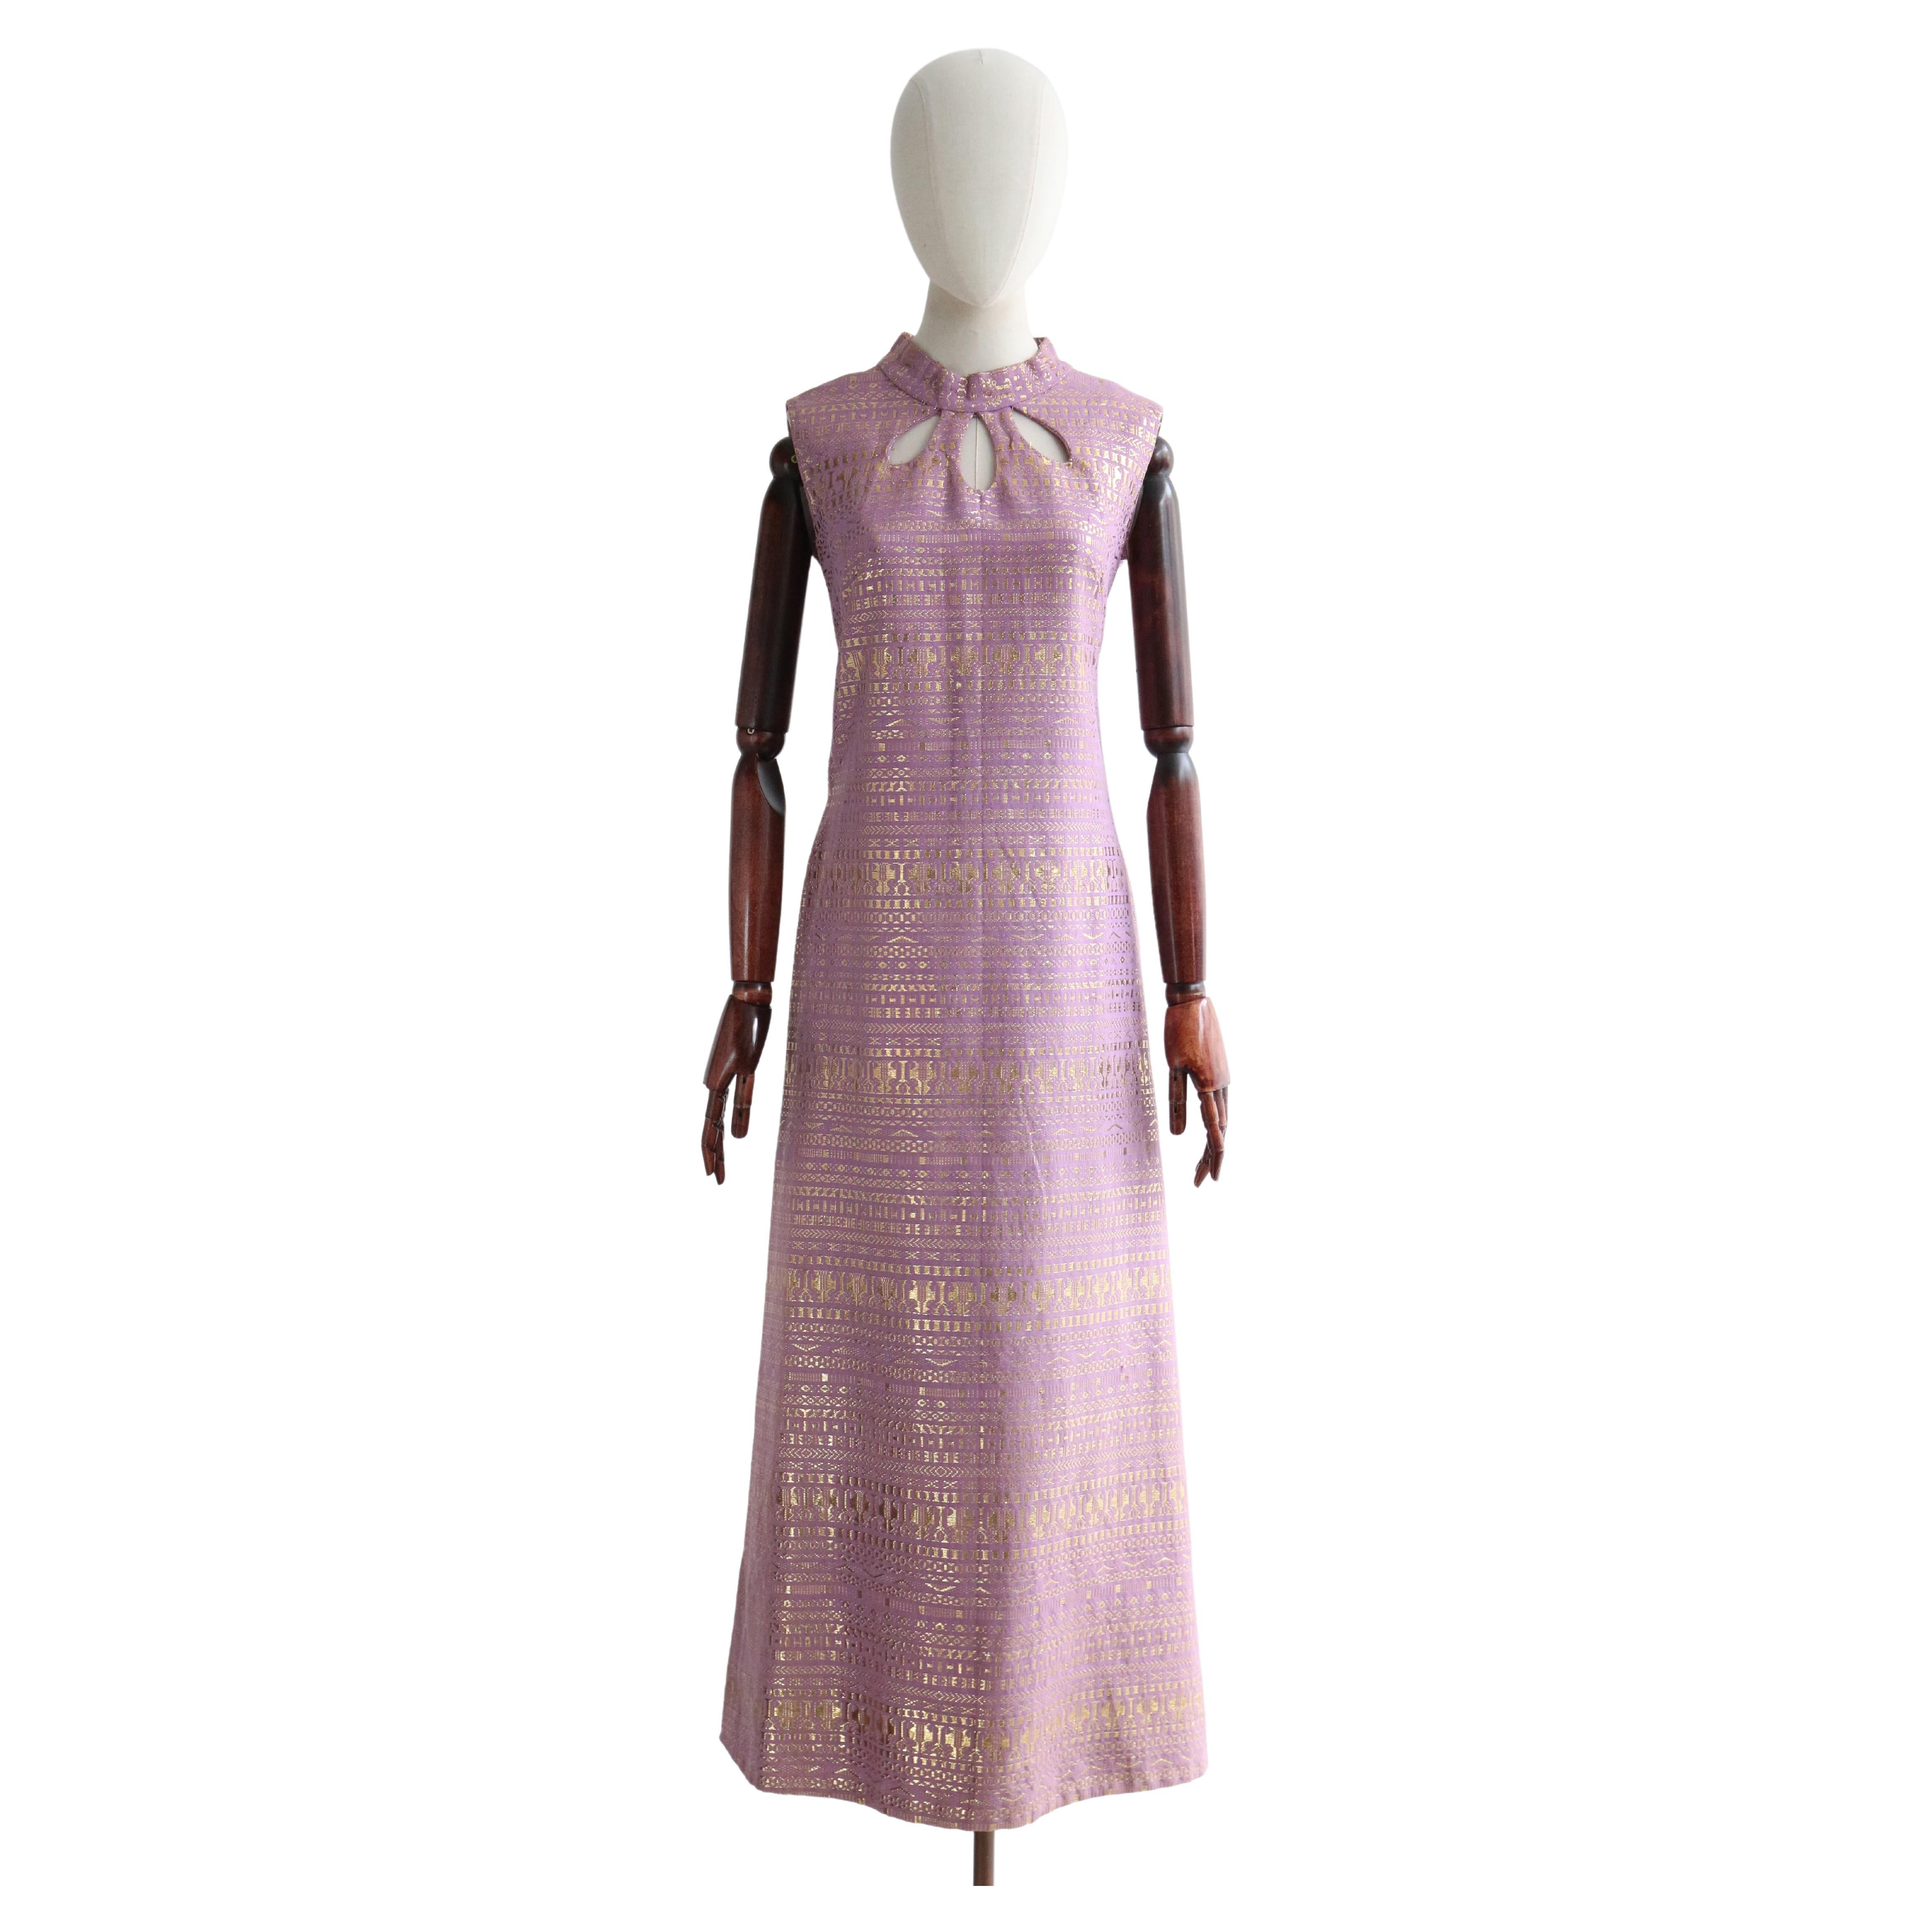 Vintage 1960's Lila & Gold Lurex Schlüsselloch Kleid UK 12-14 US 8-10